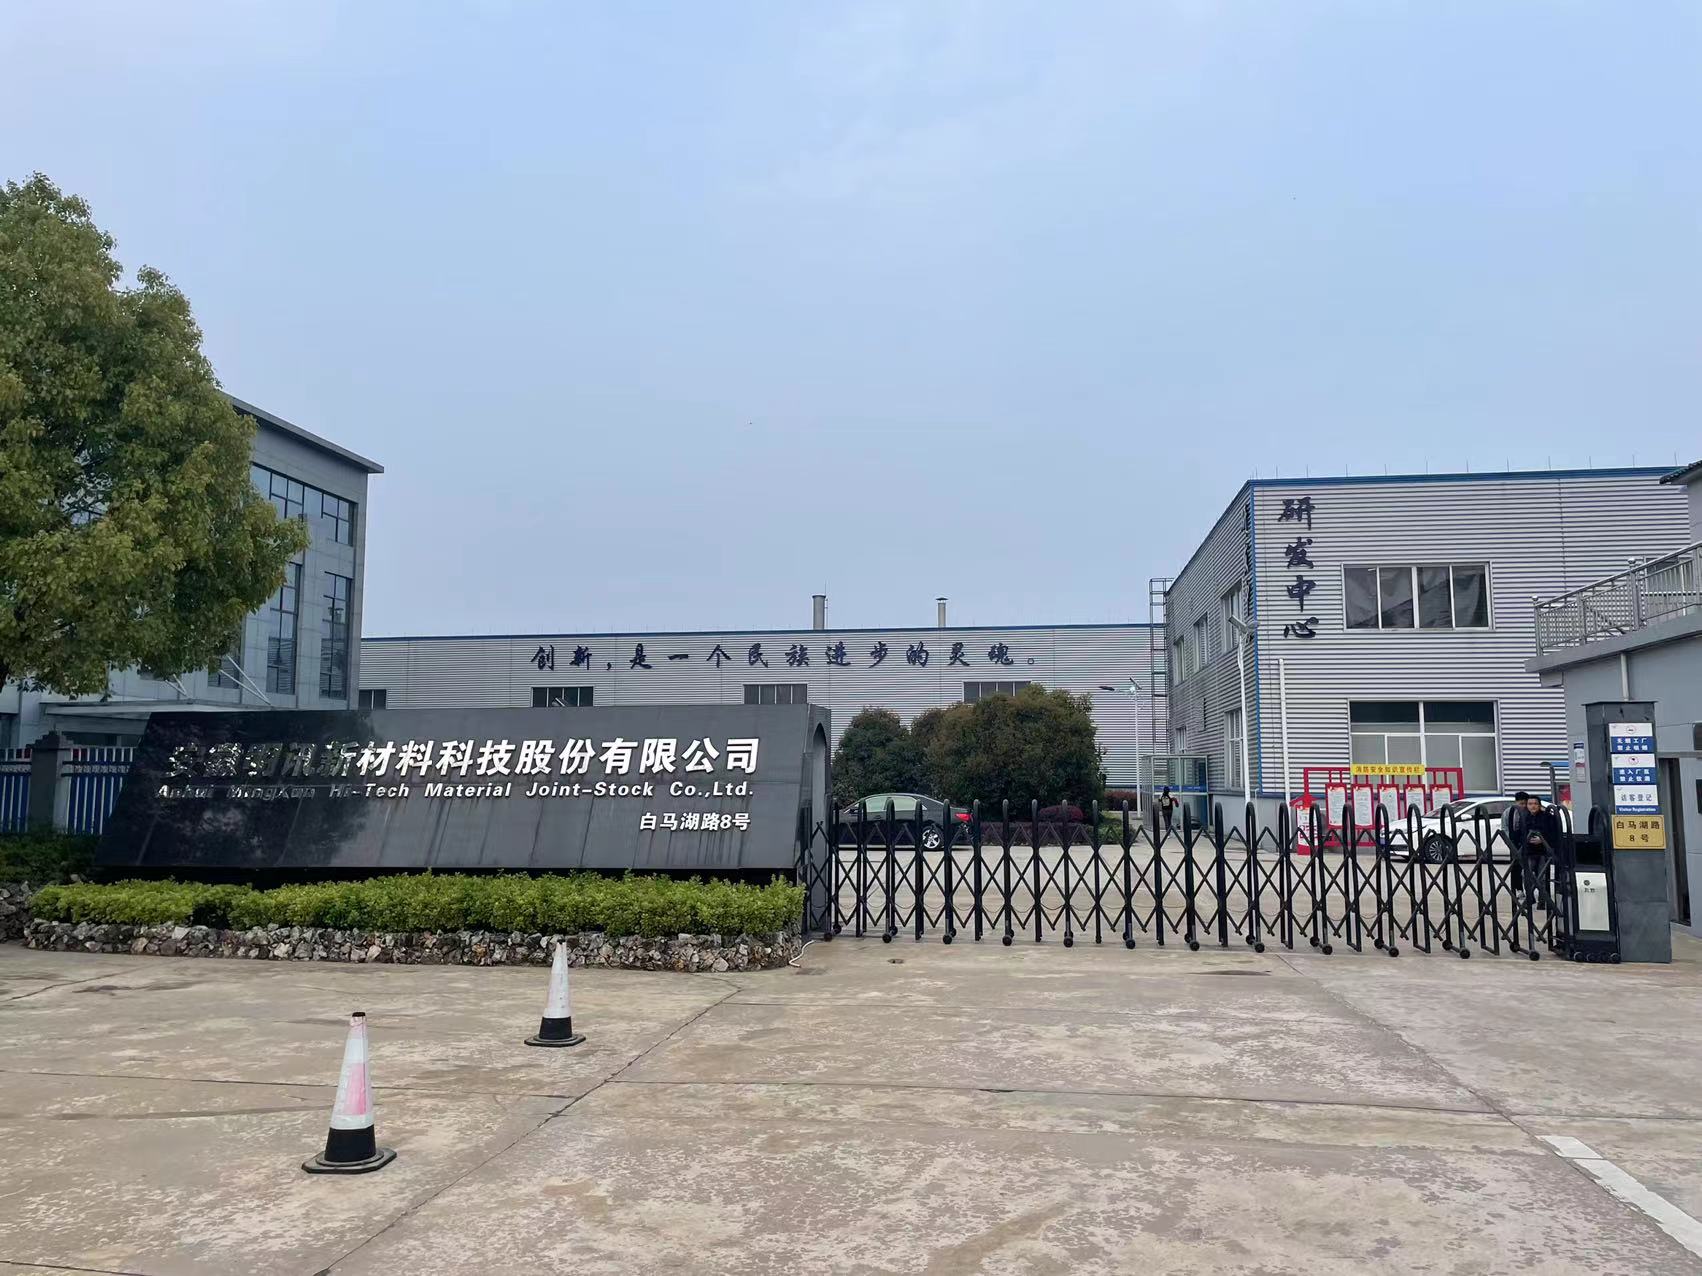 安徽明讯新材料科技股份有限公司